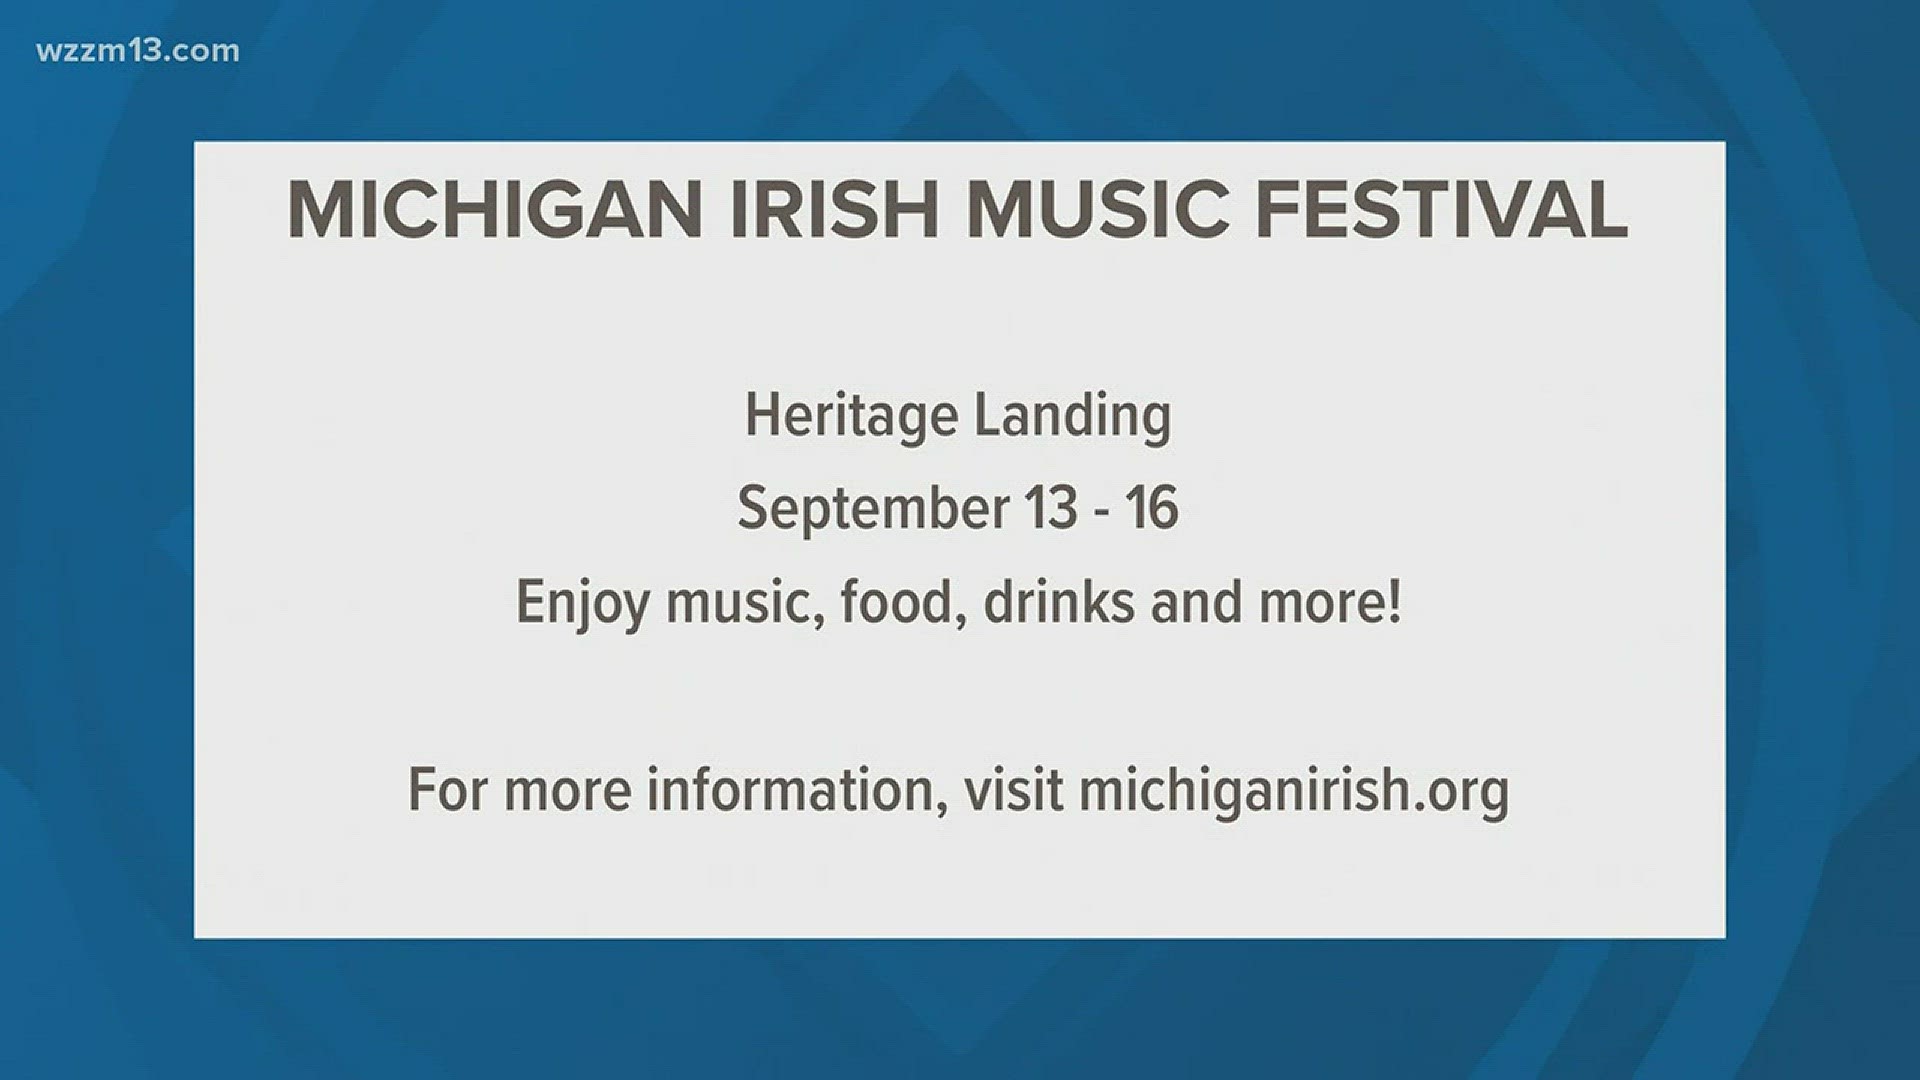 The Exchange: Michigan Irish Music Festival